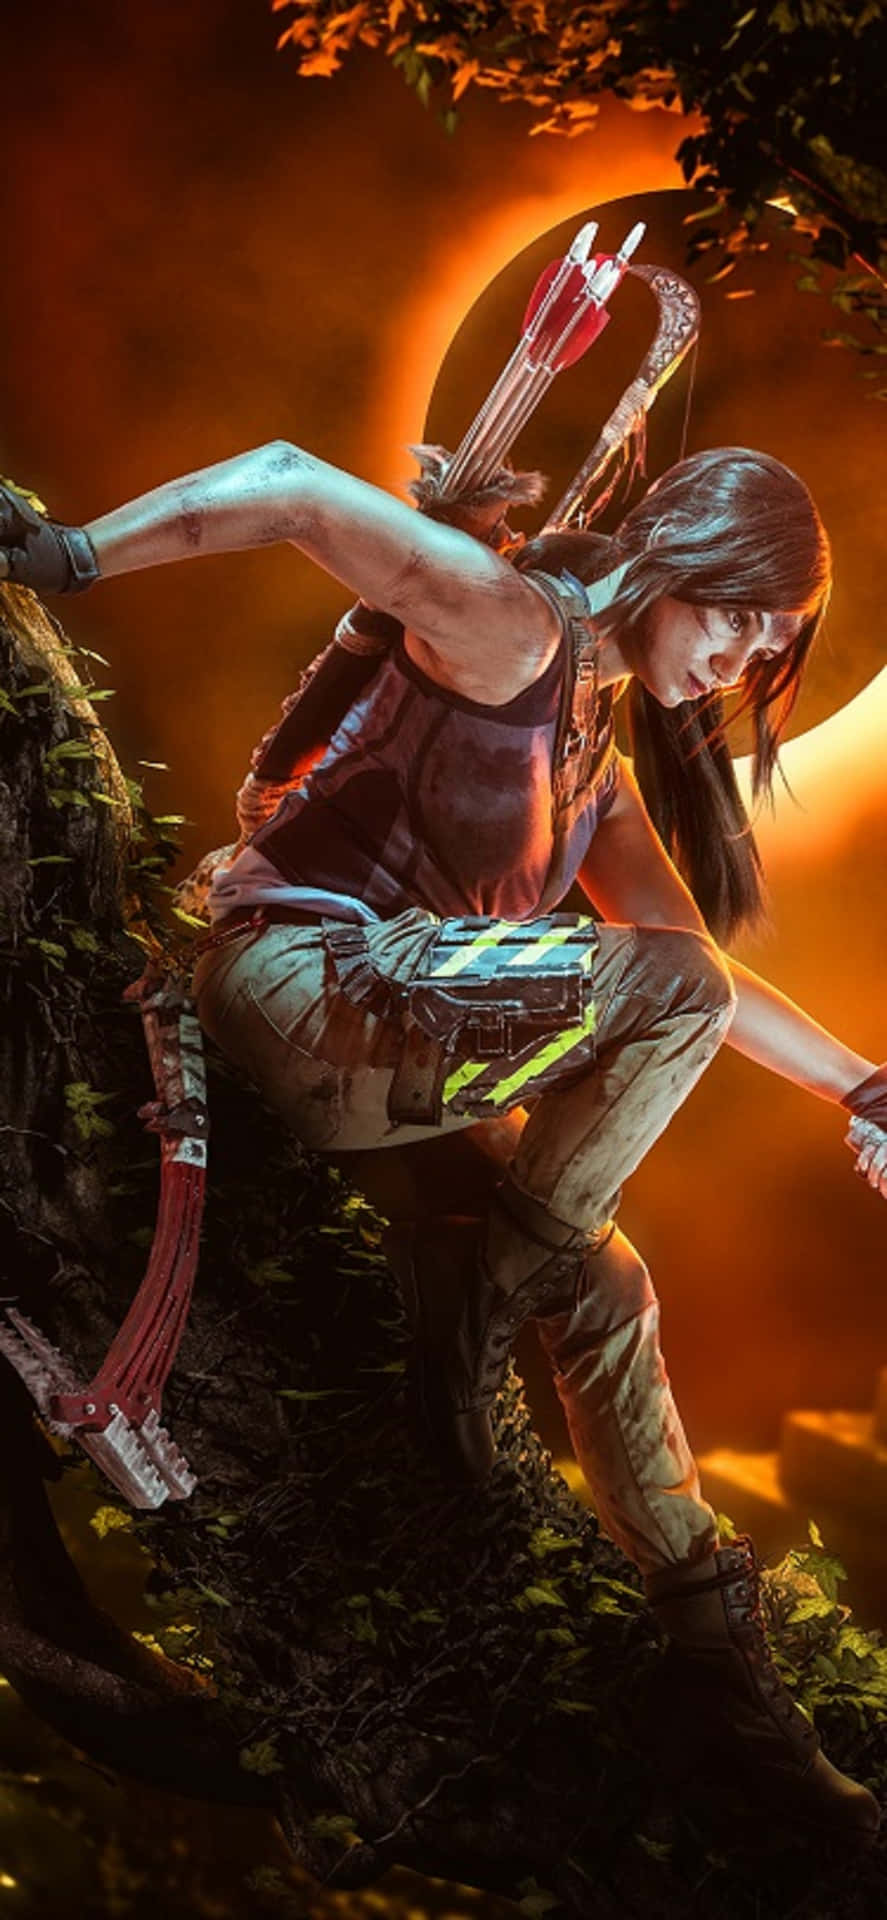 Descubrelos Misterios Del Mundo En Iphone X Shadow Of The Tomb Raider.